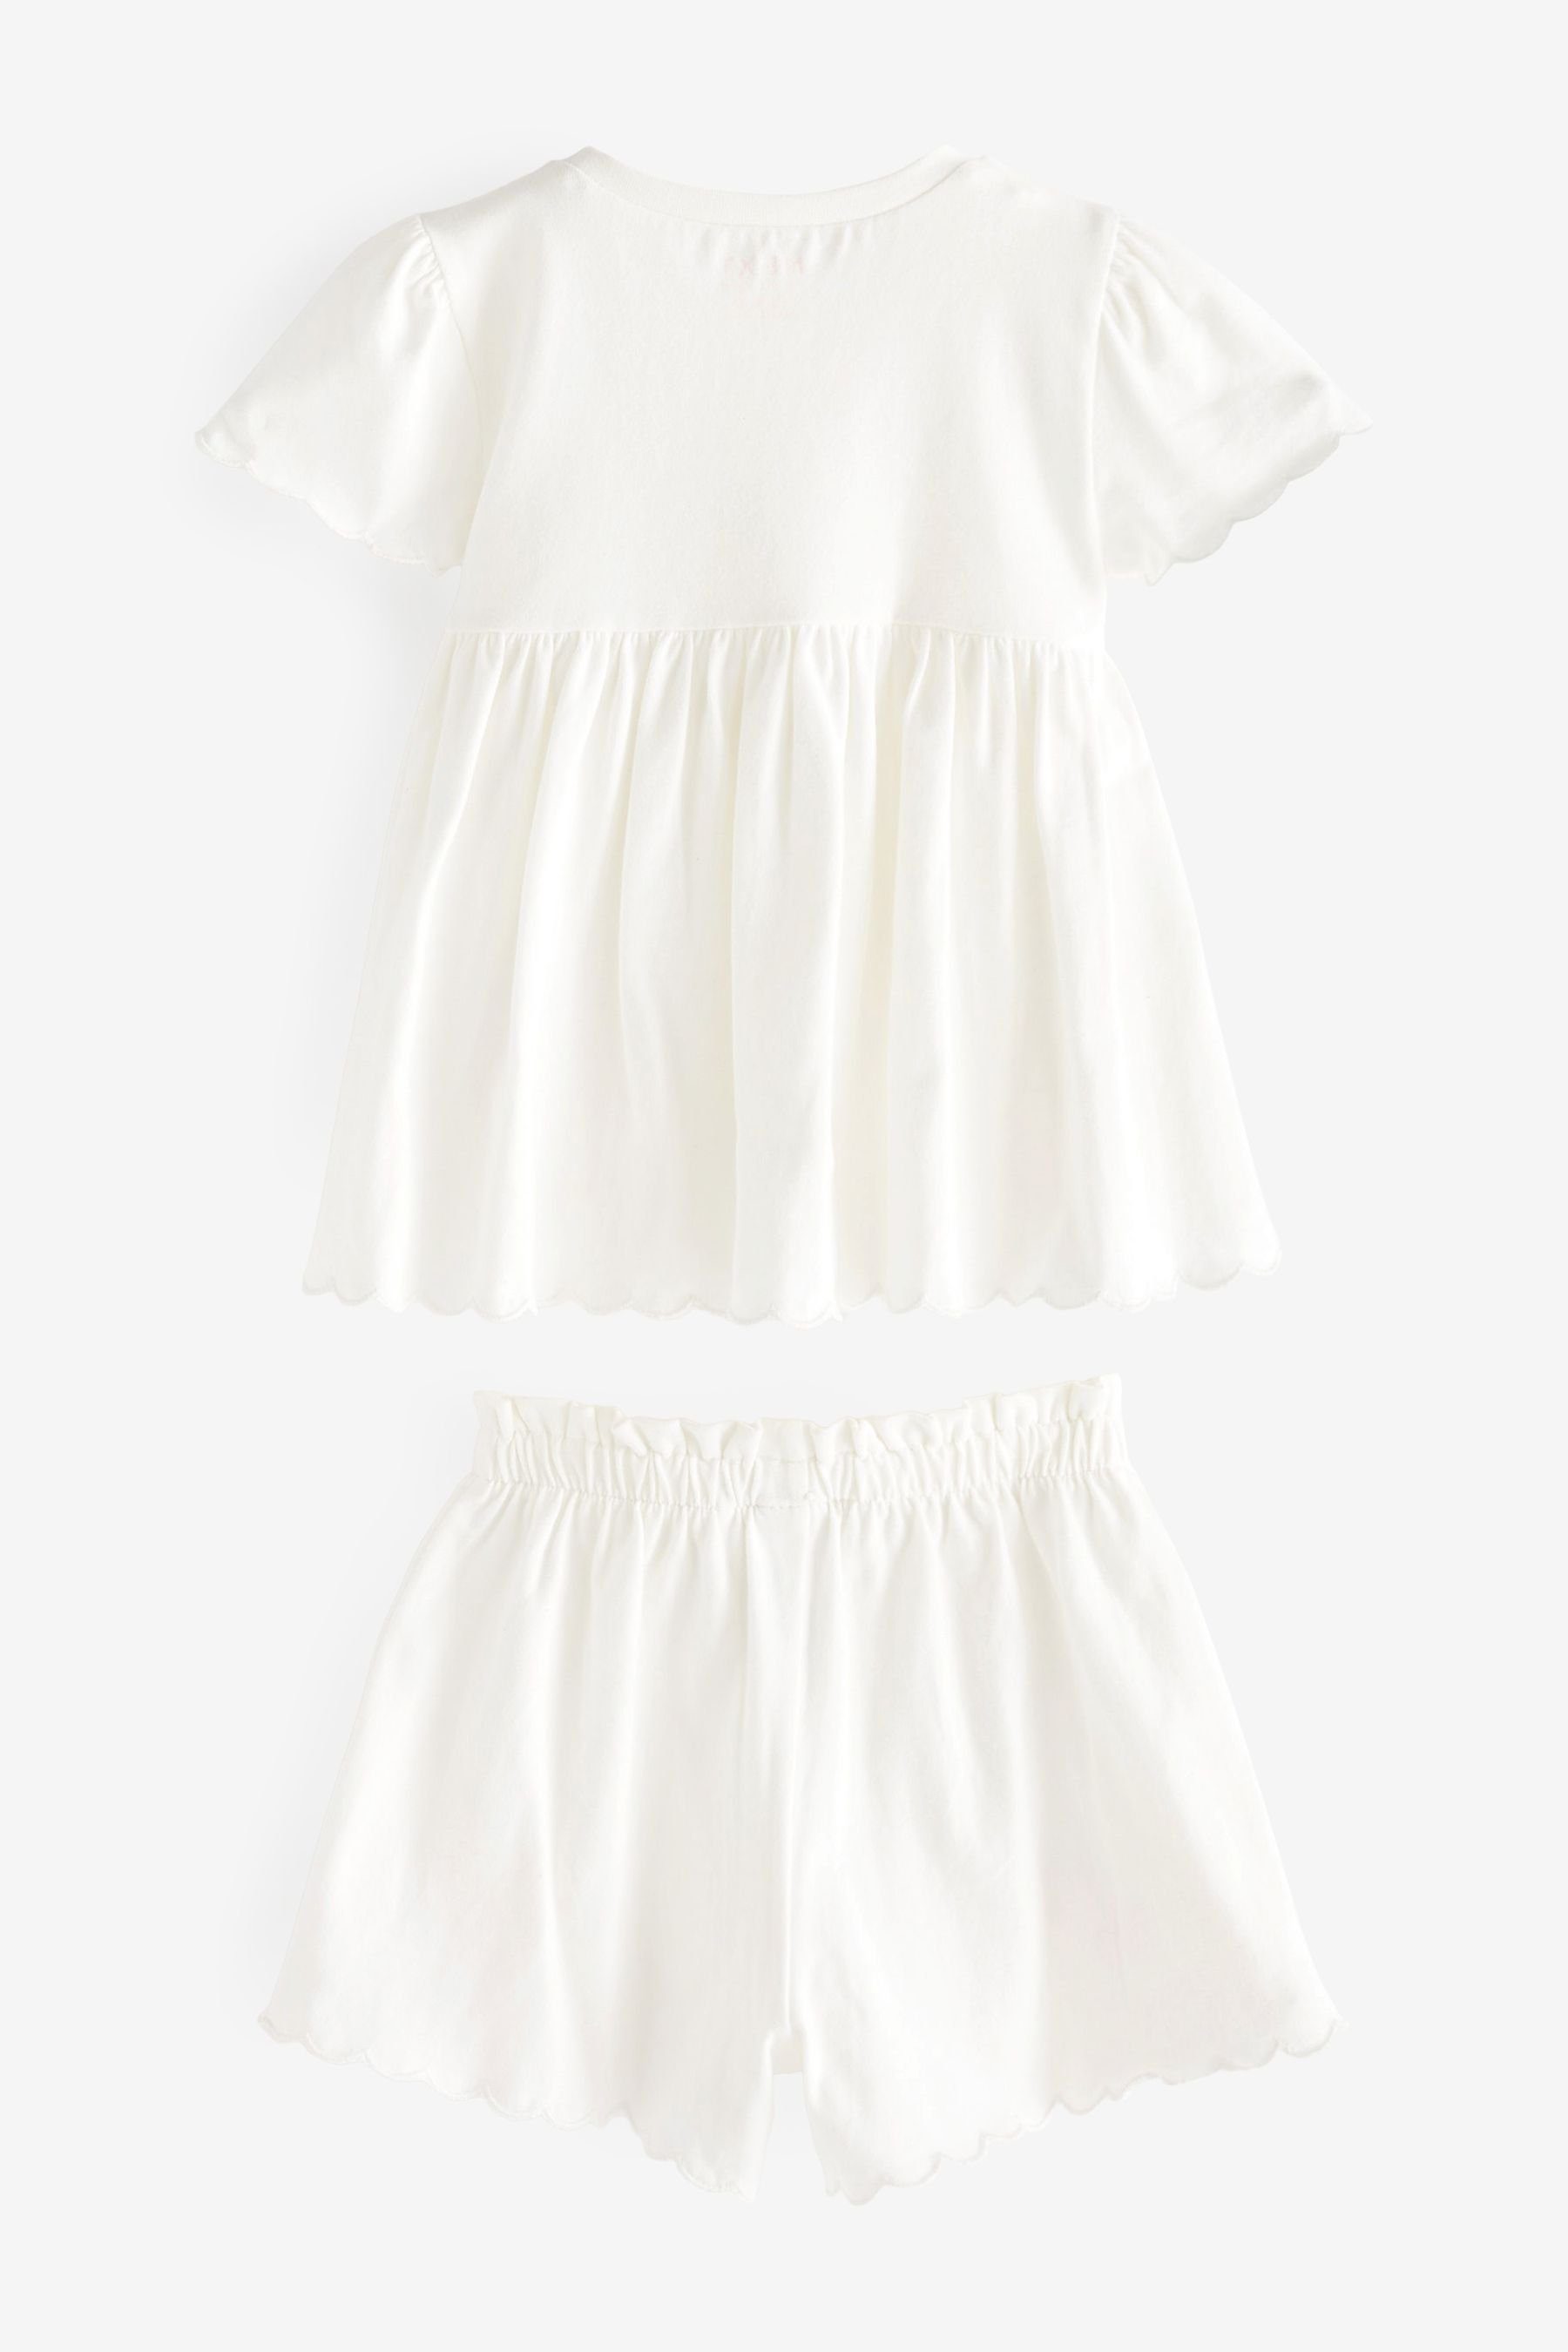 Next T-Shirt & Shorts Kurzarmoberteil Embroidered Set und im White (2-tlg) Floral Shorts Scallop